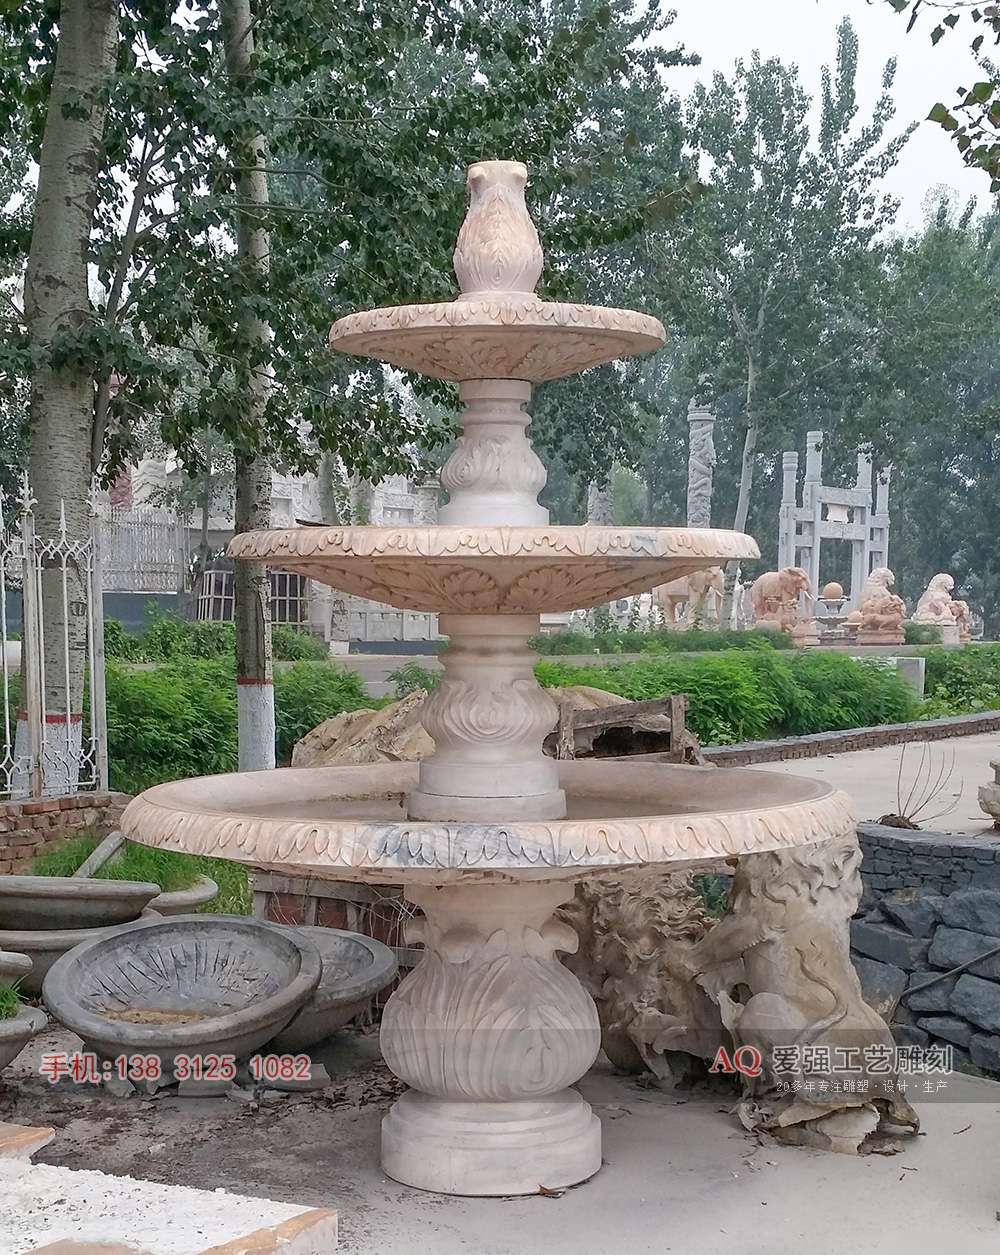 石雕喷泉-PQ100.jpg